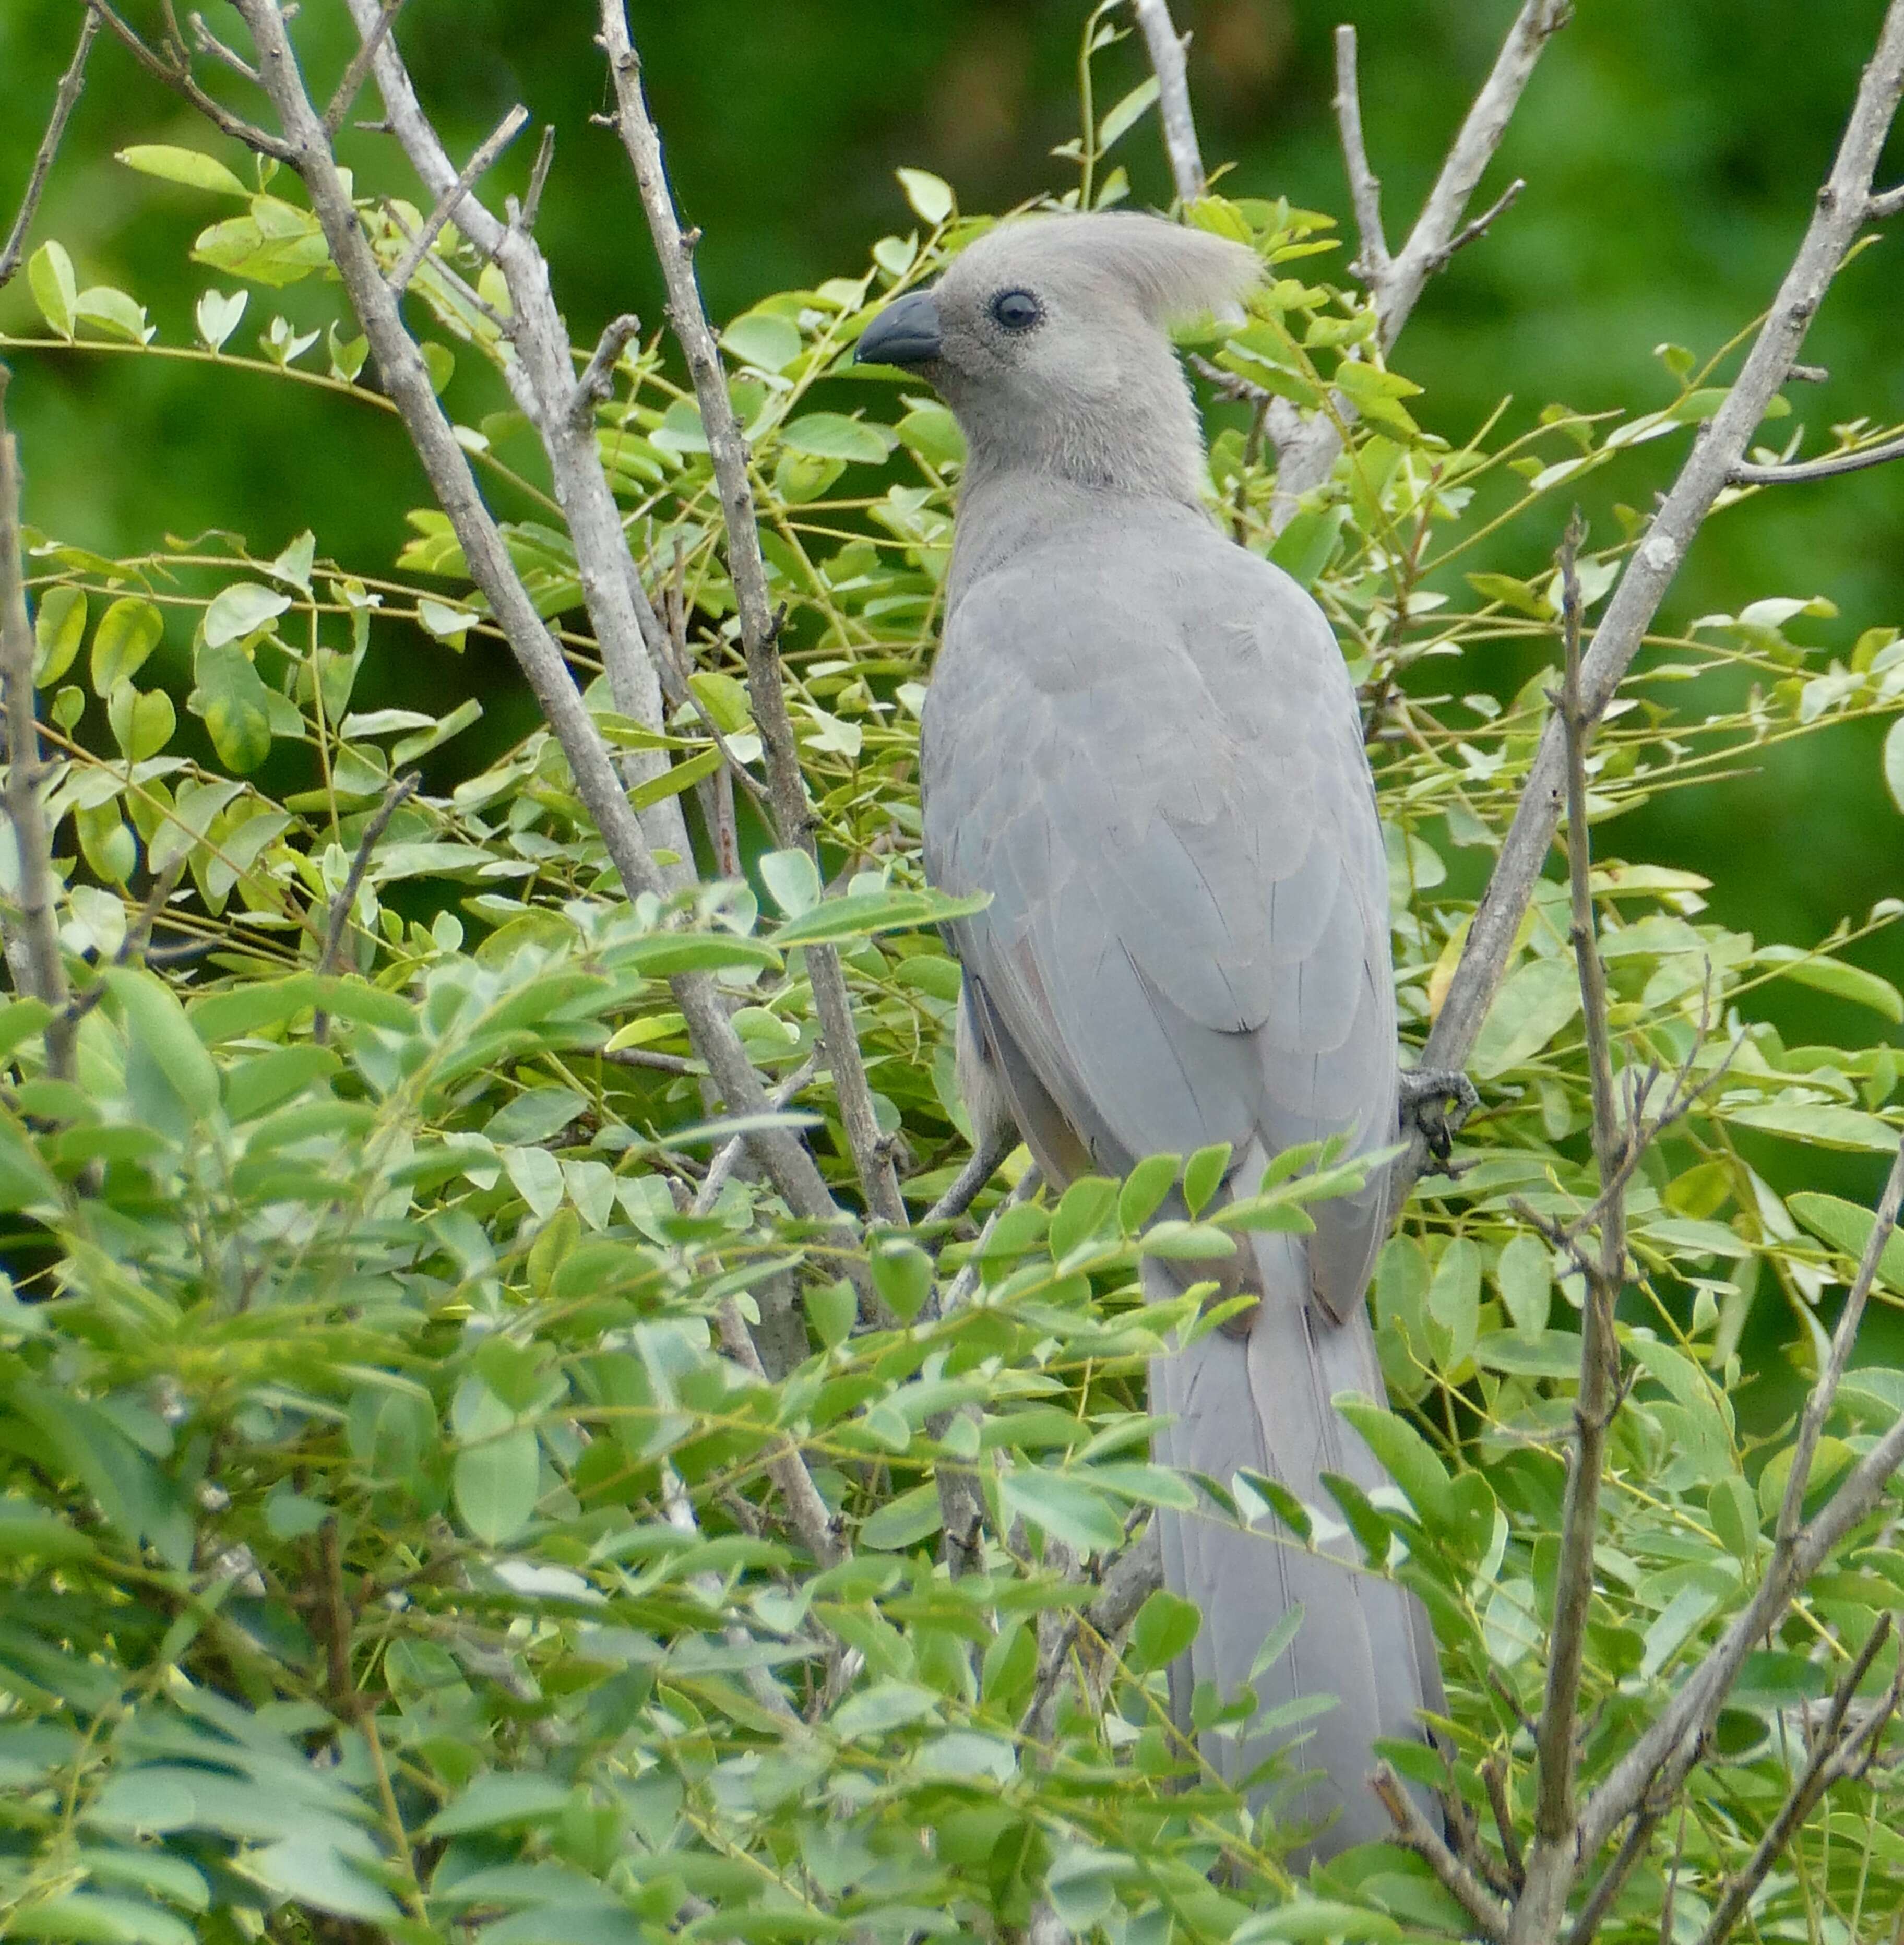 Image of Grey Go-away-bird